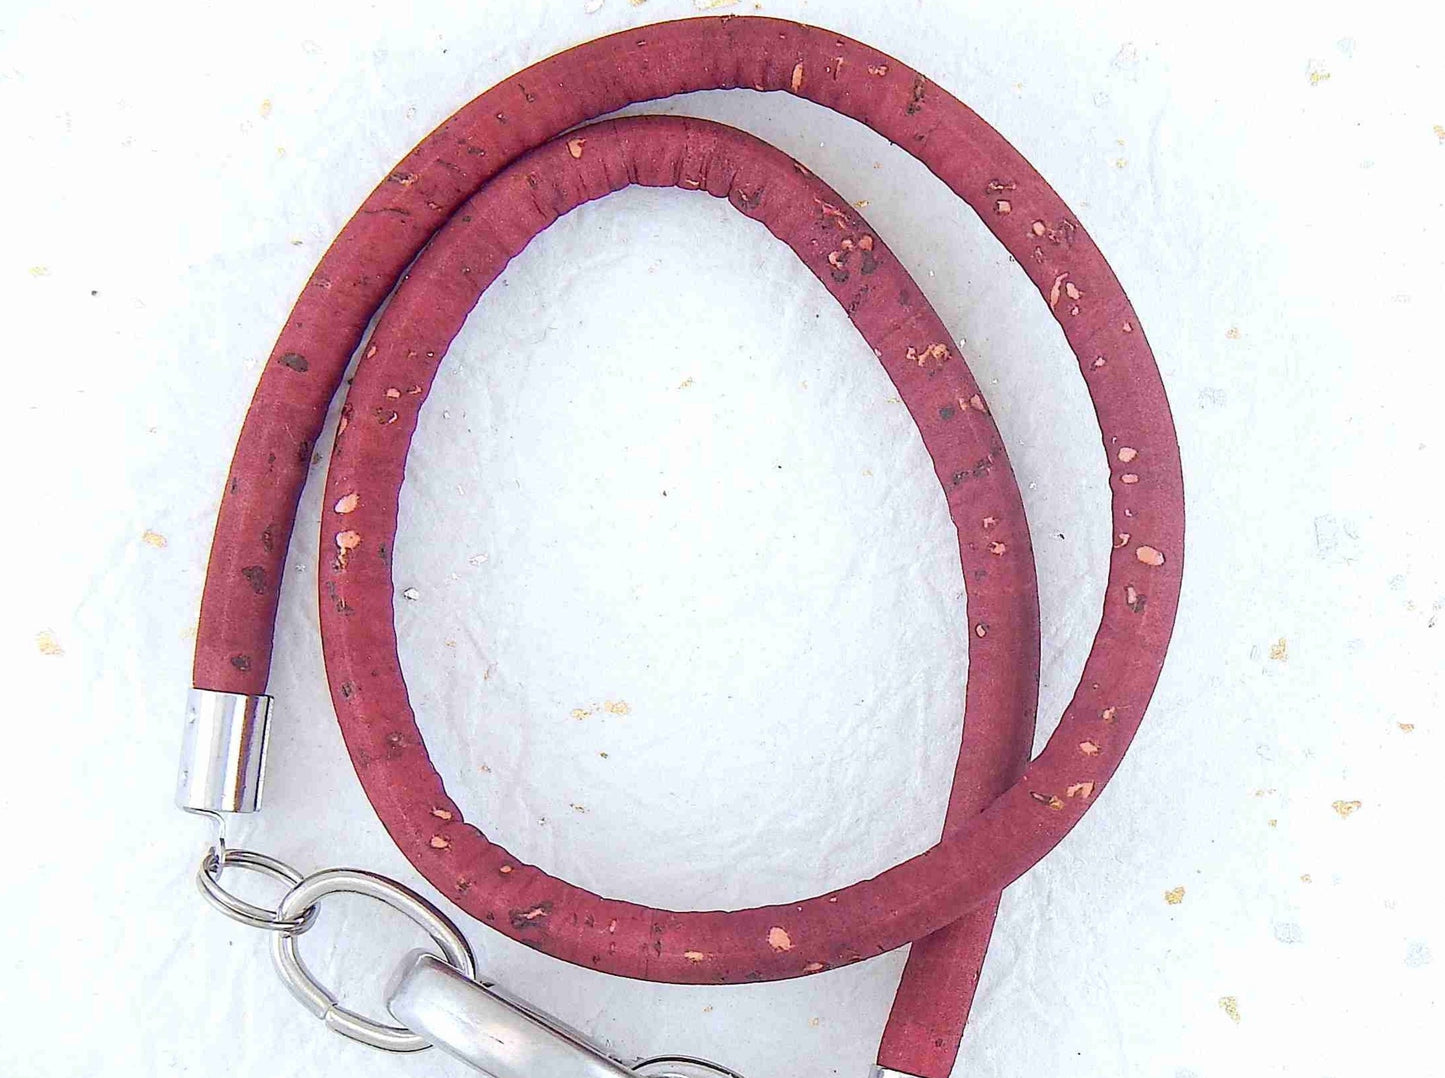 Bracelet 2 tours de liège rond 6mm avec fermoir ovale acier inoxydable en 4 couleurs chaudes (bourgogne, corail, baie, violet)